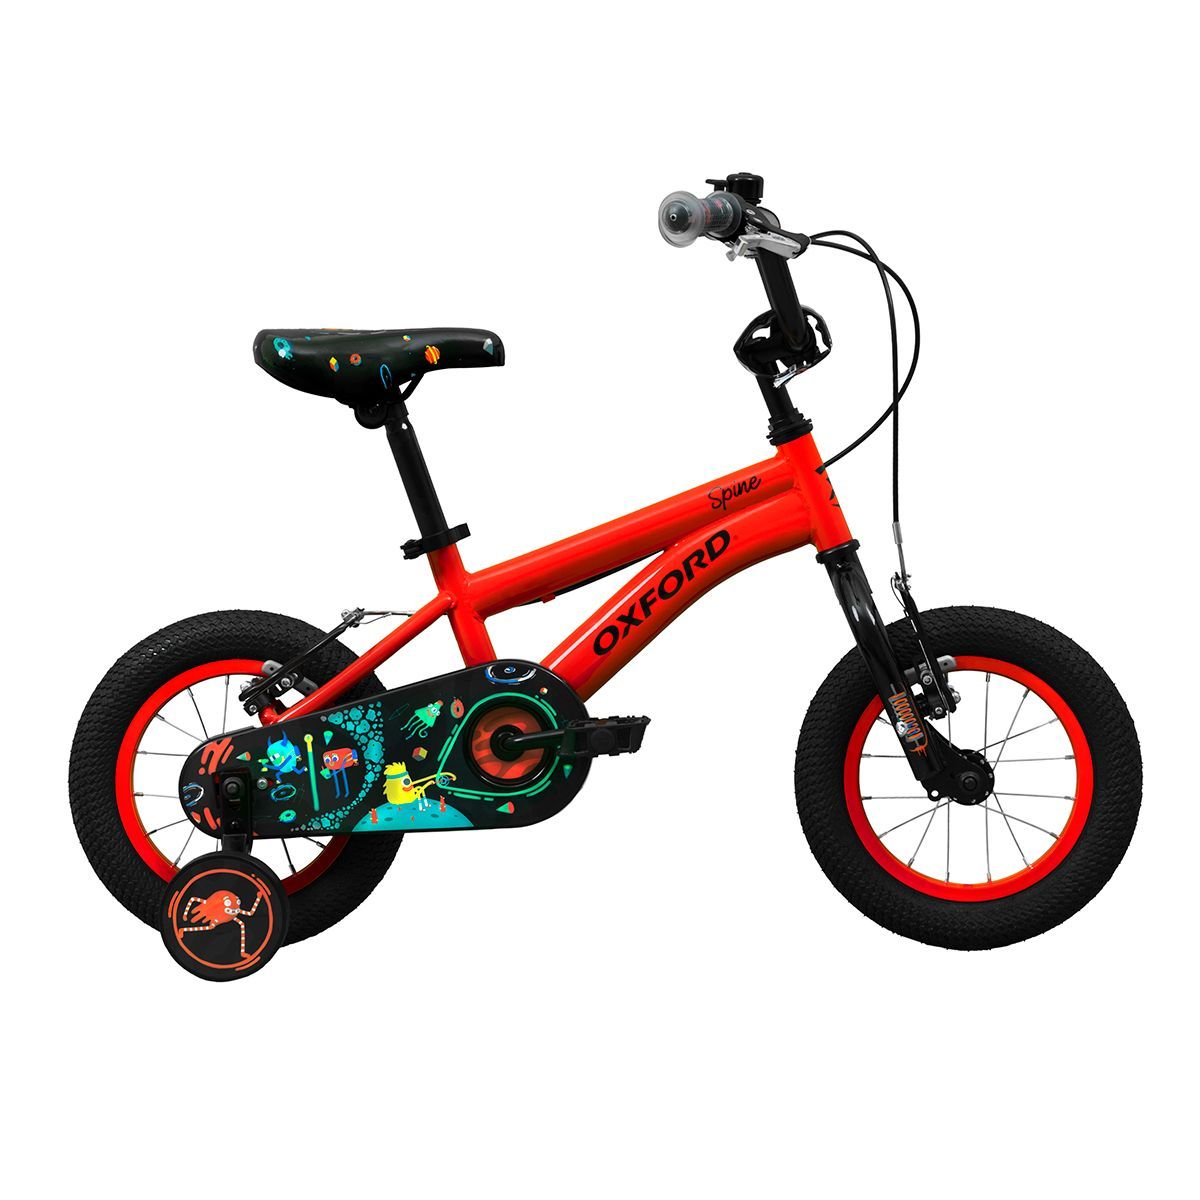 Oxford Bicicleta Infantil Spine Aro 12 Rojo/Negro